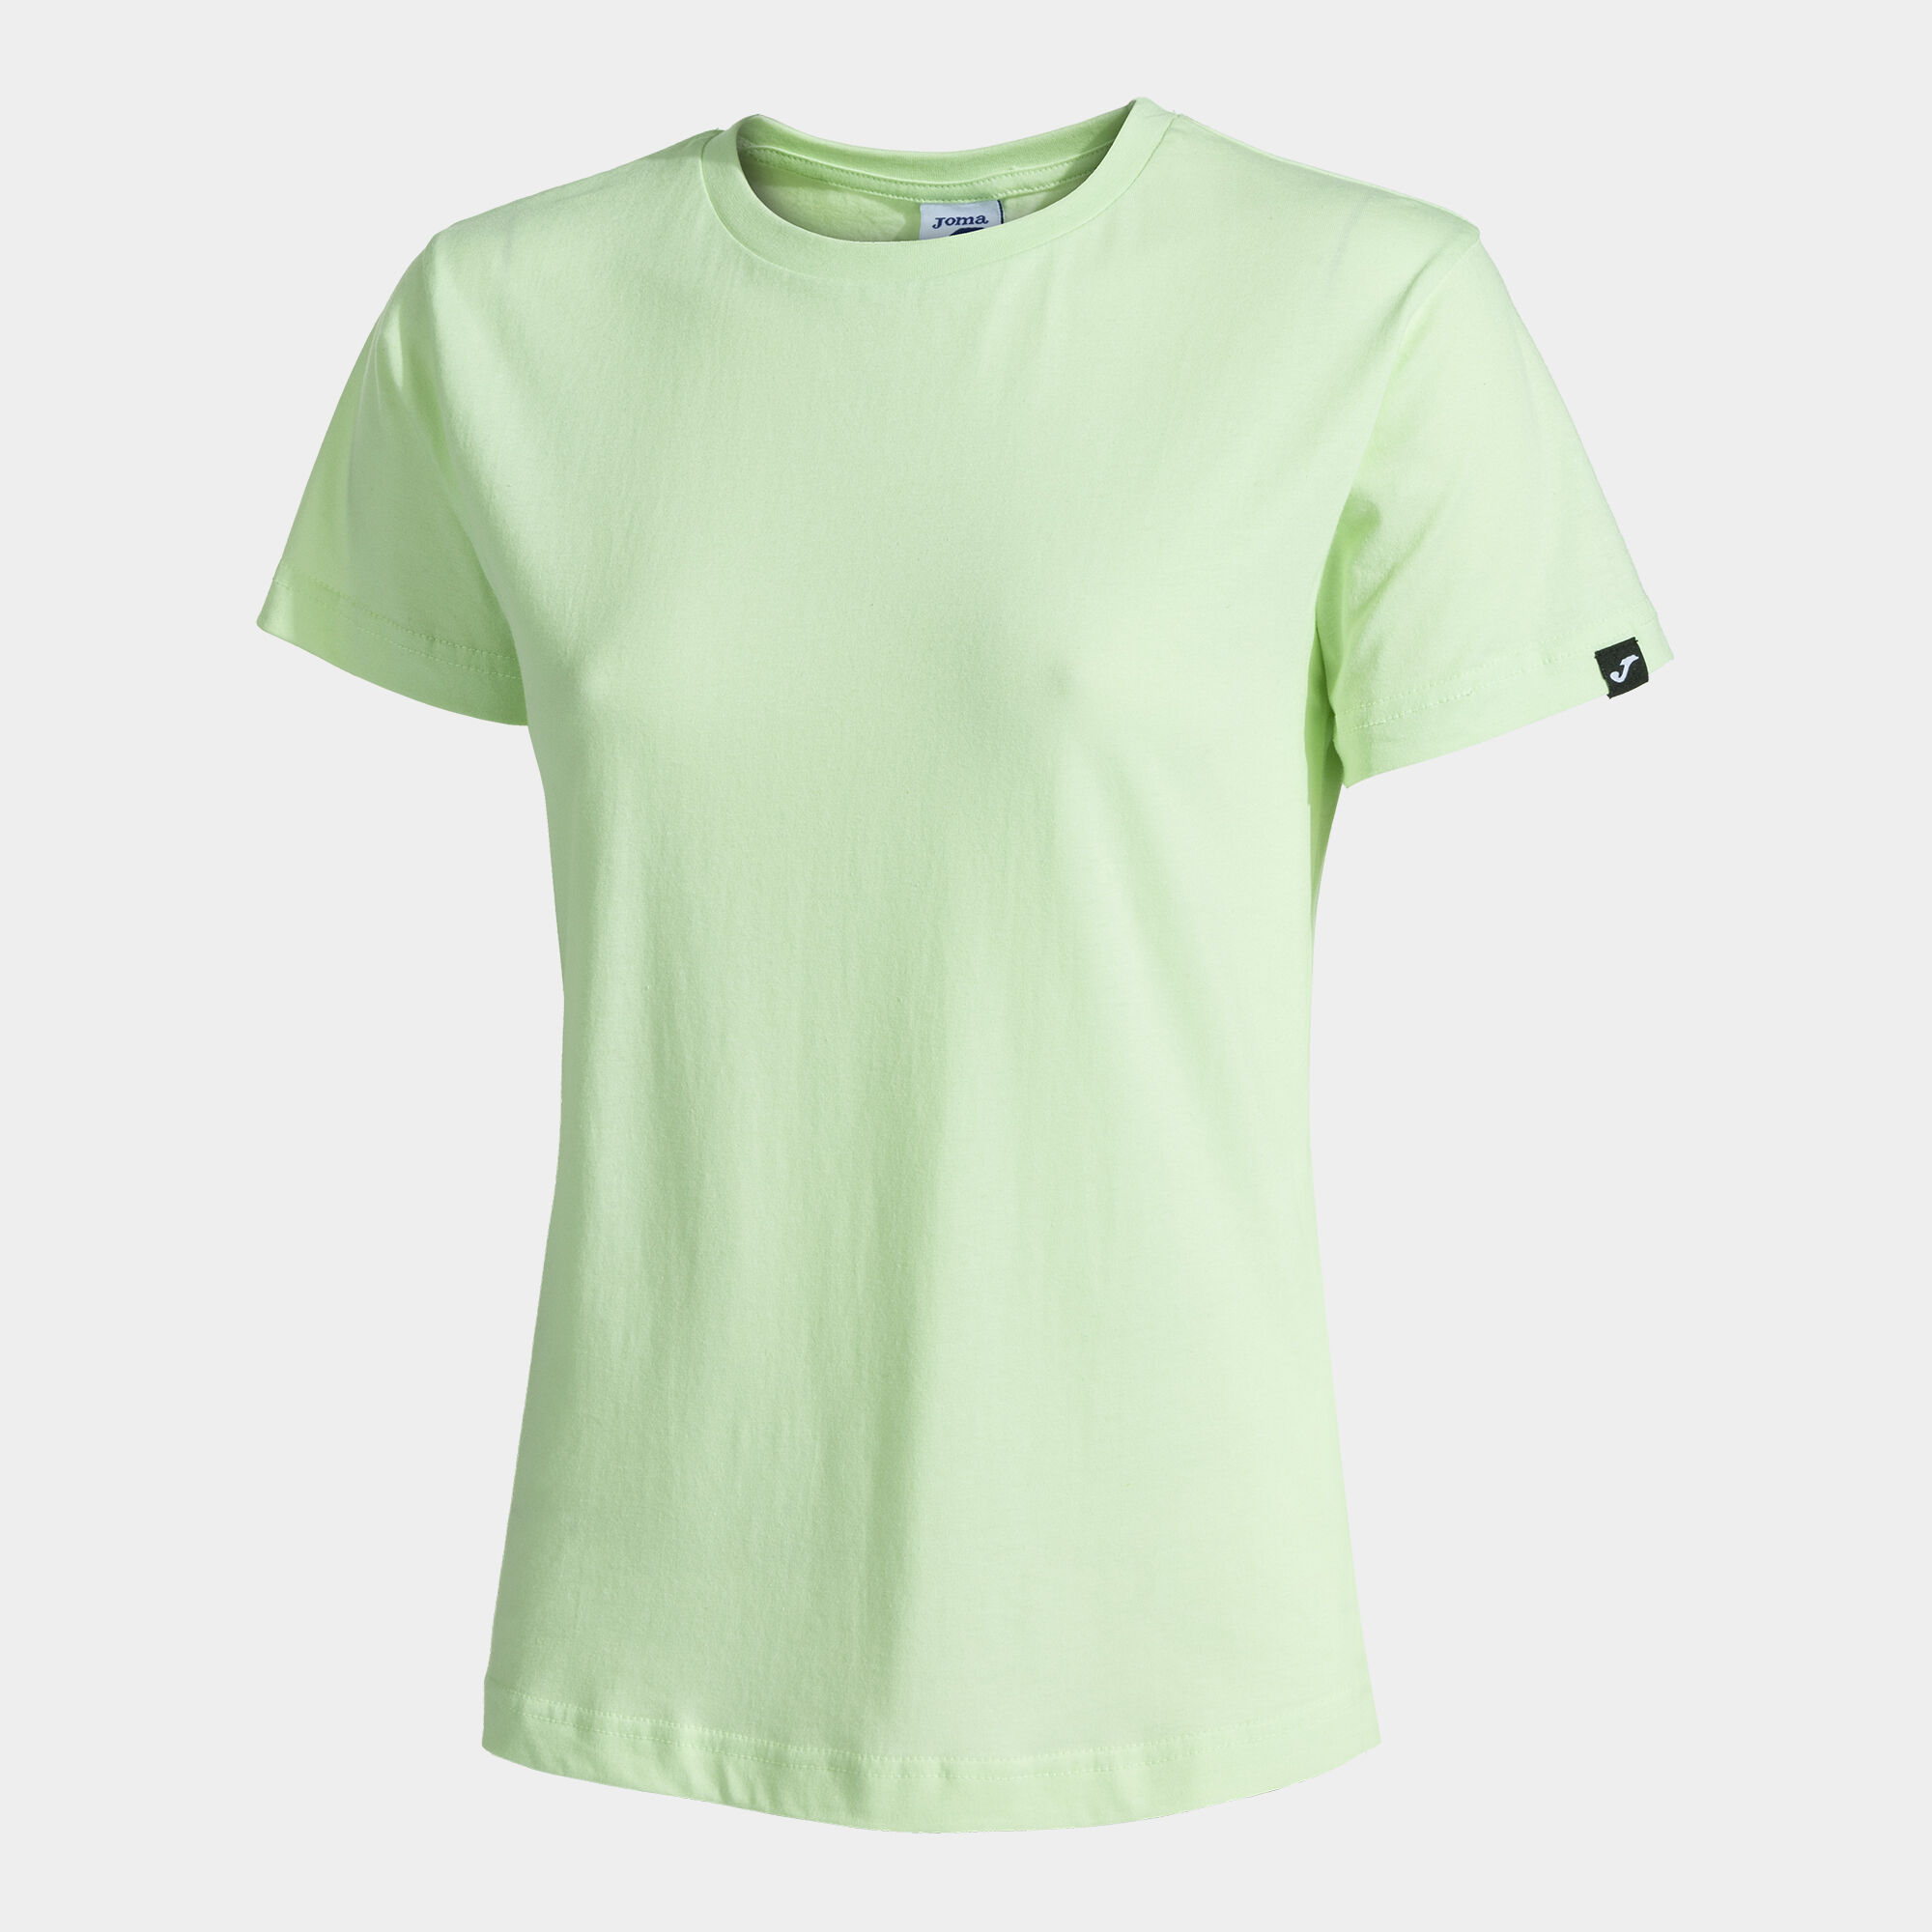 Shirt short sleeve woman Desert green